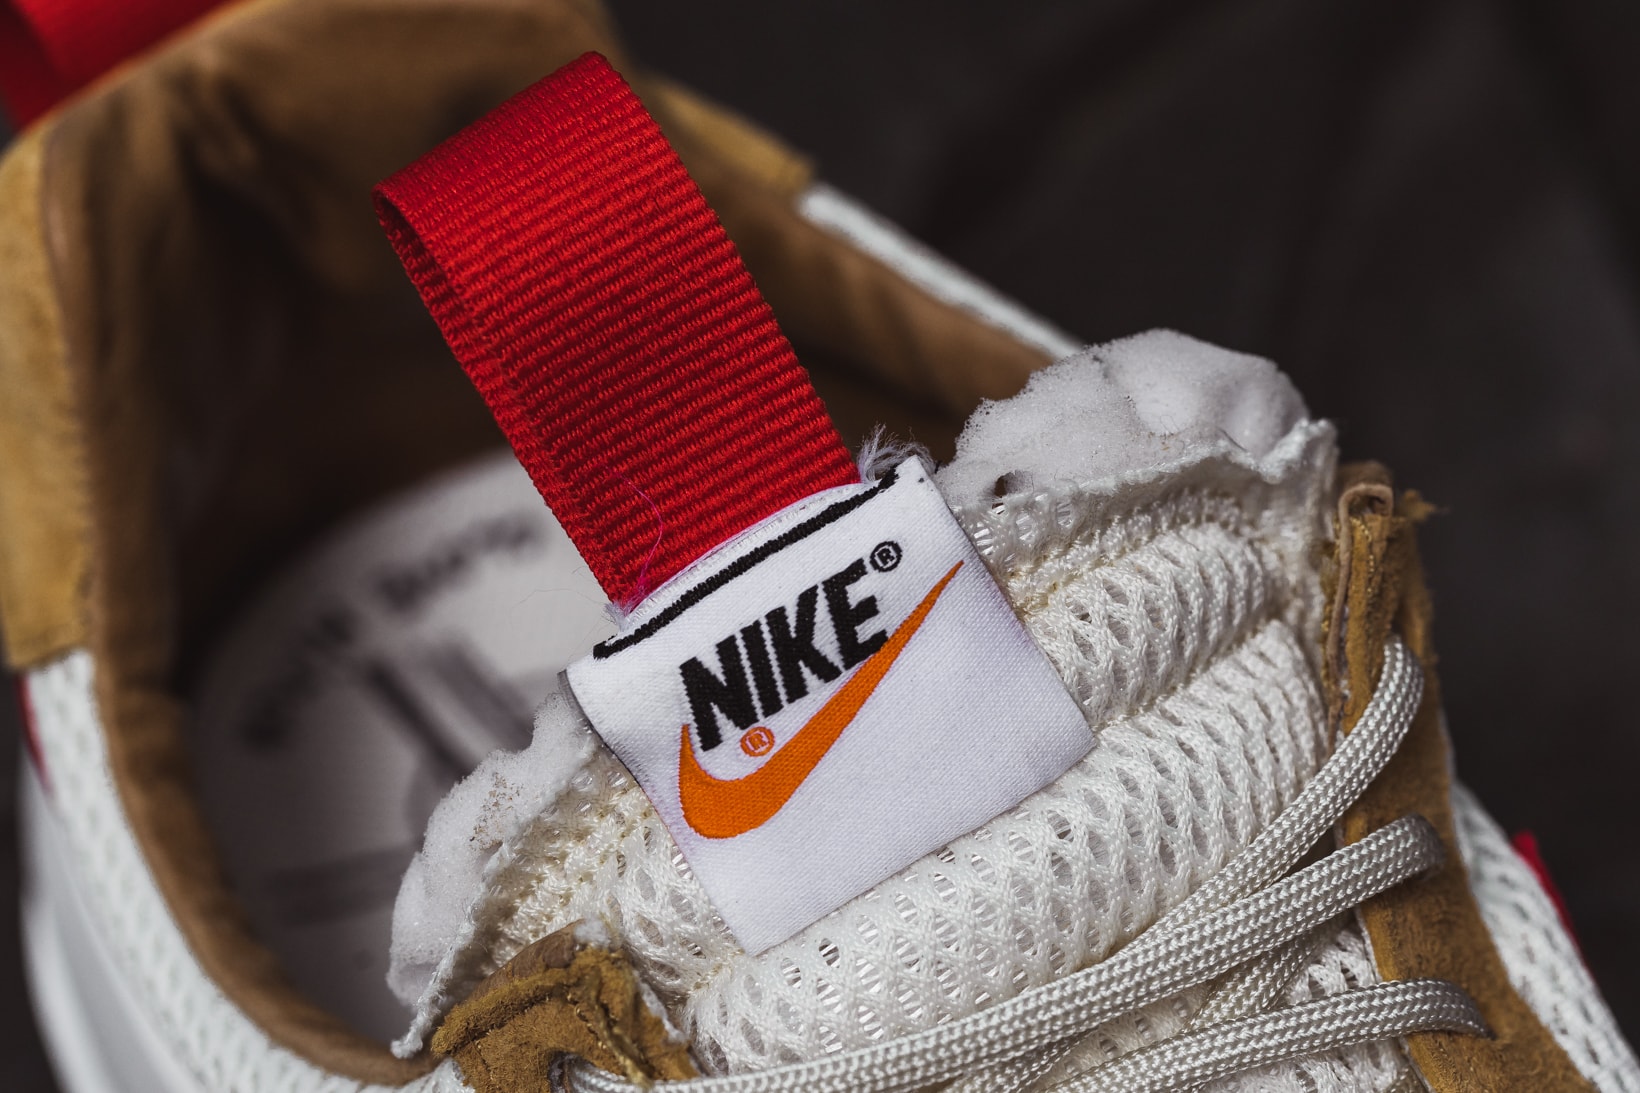 Tom Sachs Breaks Down the Nike Mars Yard 2.0 Sneaker 